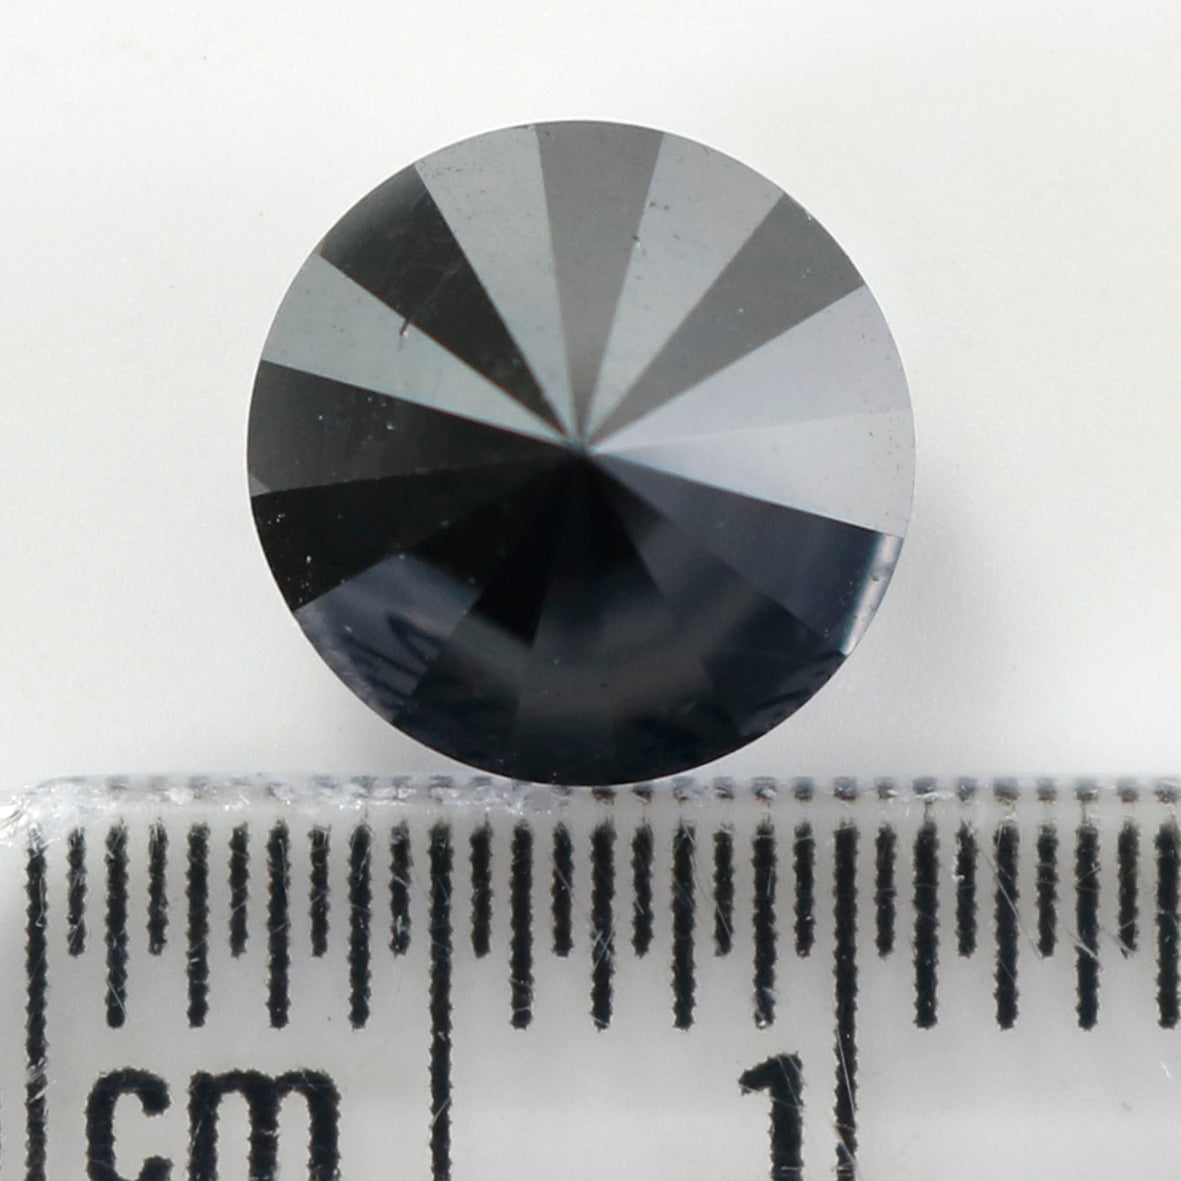 2.98 Ct Natural Loose Diamond, Black Color Diamond, Round Diamond, Round Brilliant Cut Diamond, Sparkling Diamond, Rustic Diamond L407